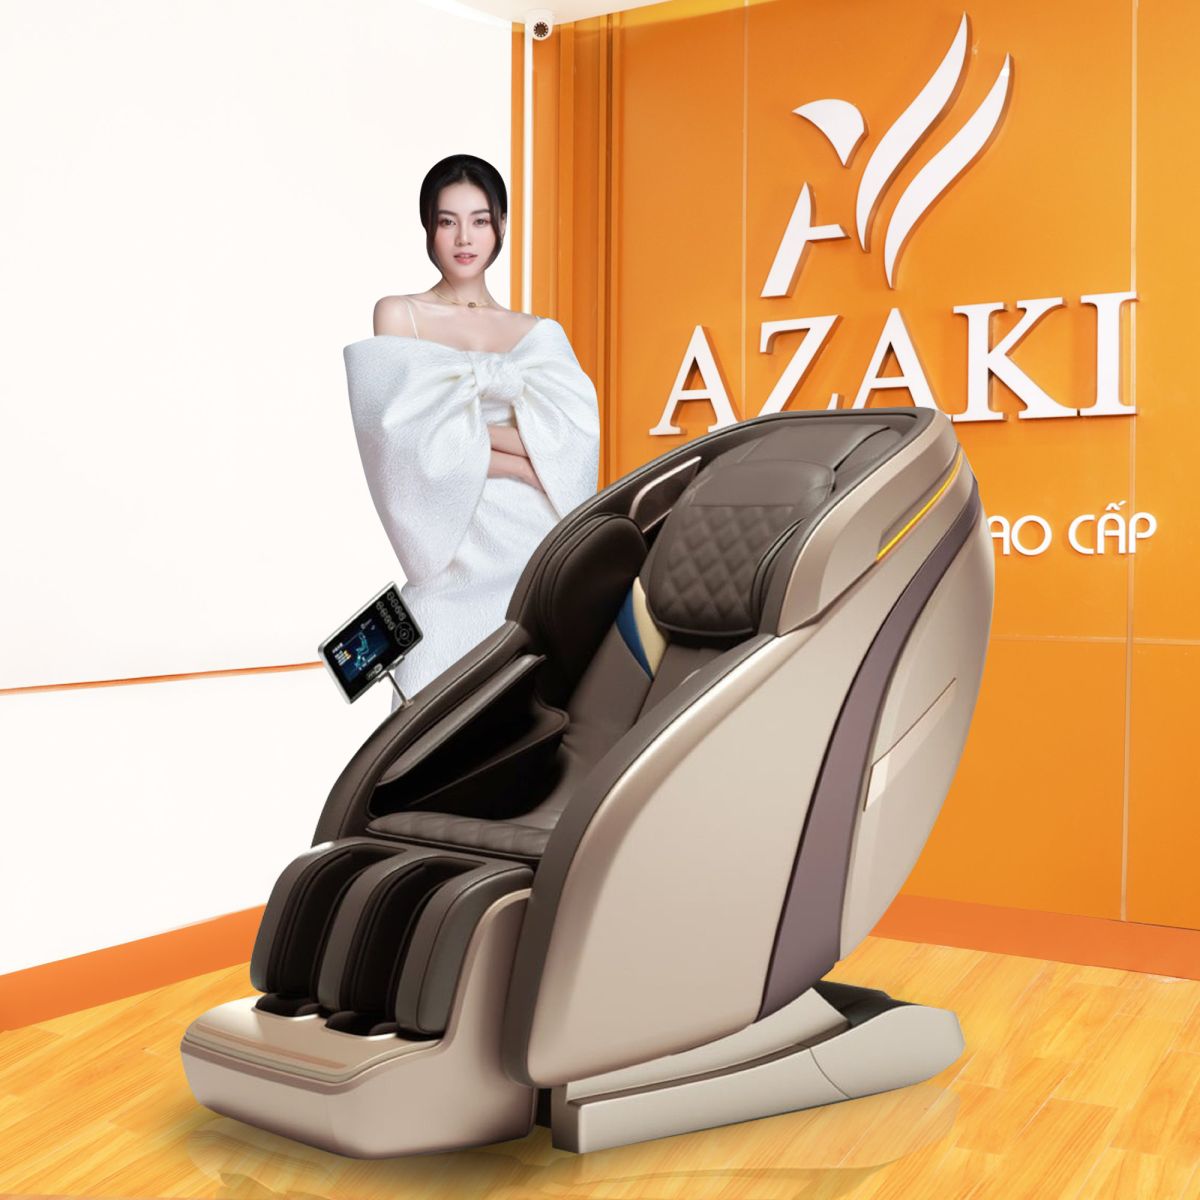 Thông số kĩ thuật và các chế độ của ghế massage Azaki X750 - Nâu chính hãng